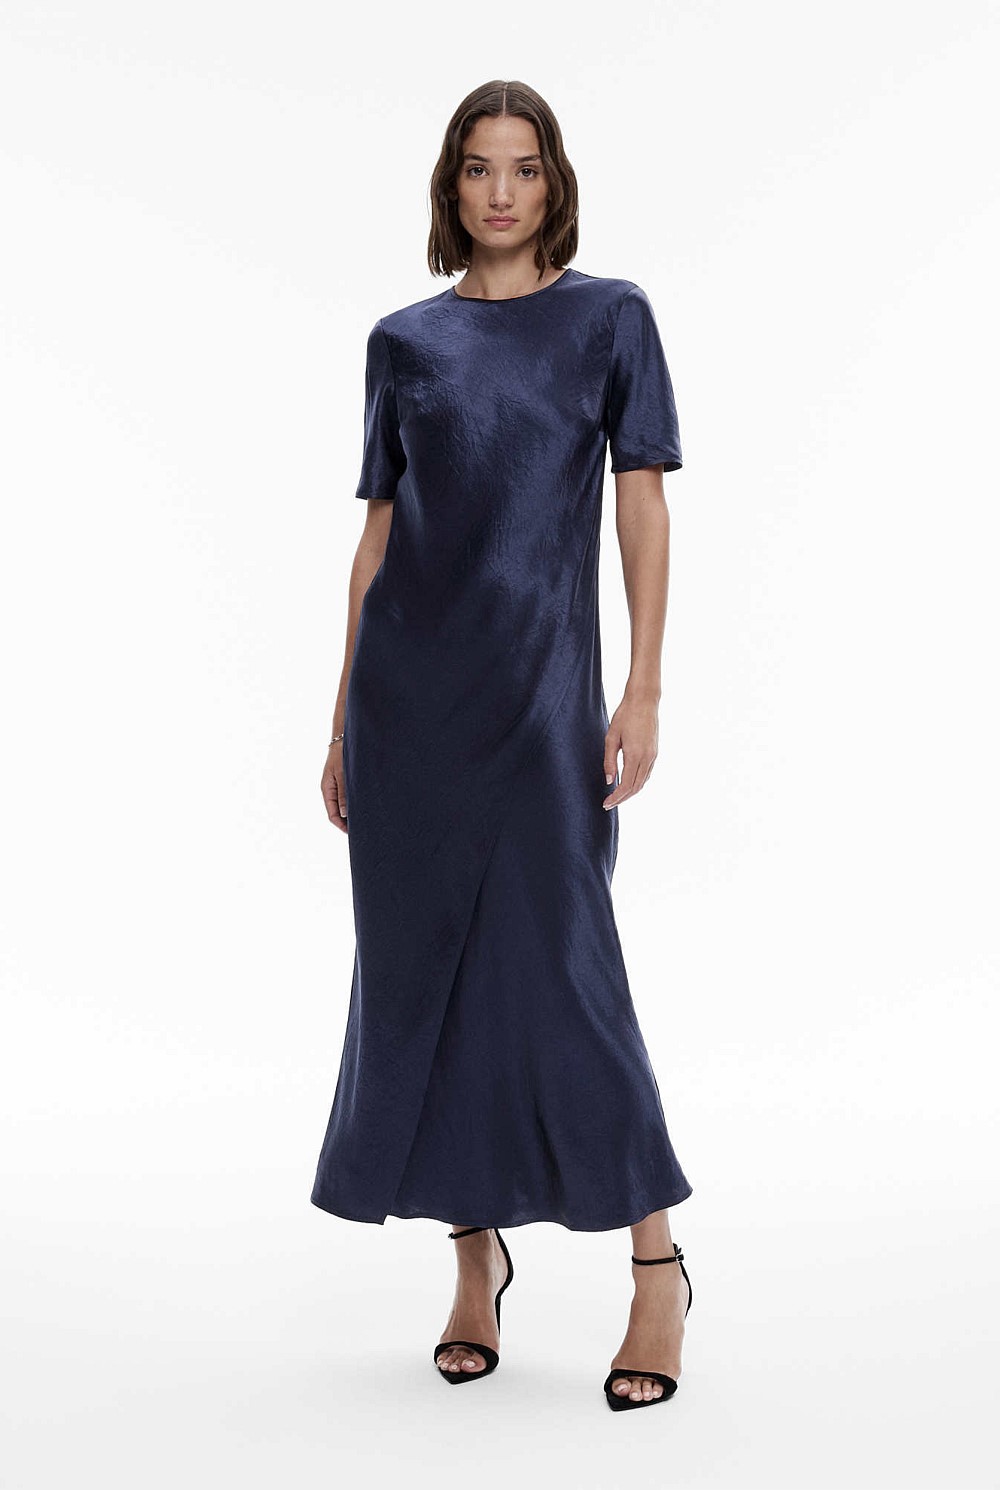 Velvet Dresses  Buy Women's Dresses Online Australia - THE ICONIC